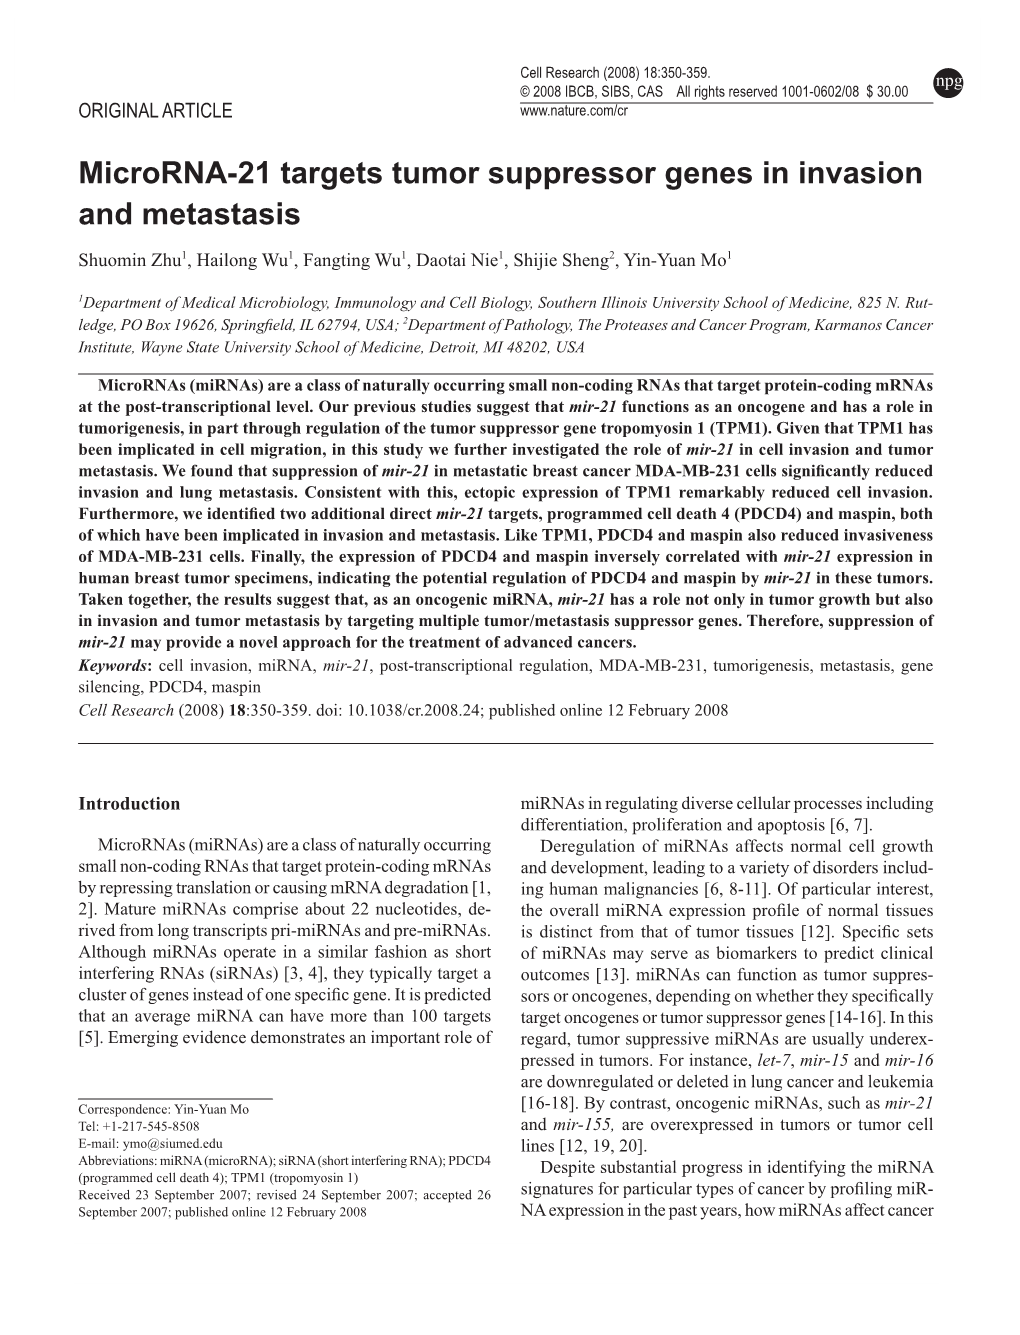 Microrna-21 Targets Tumor Suppressor Genes in Invasion and Metastasis Shuomin Zhu1, Hailong Wu1, Fangting Wu1, Daotai Nie1, Shijie Sheng2, Yin-Yuan Mo1